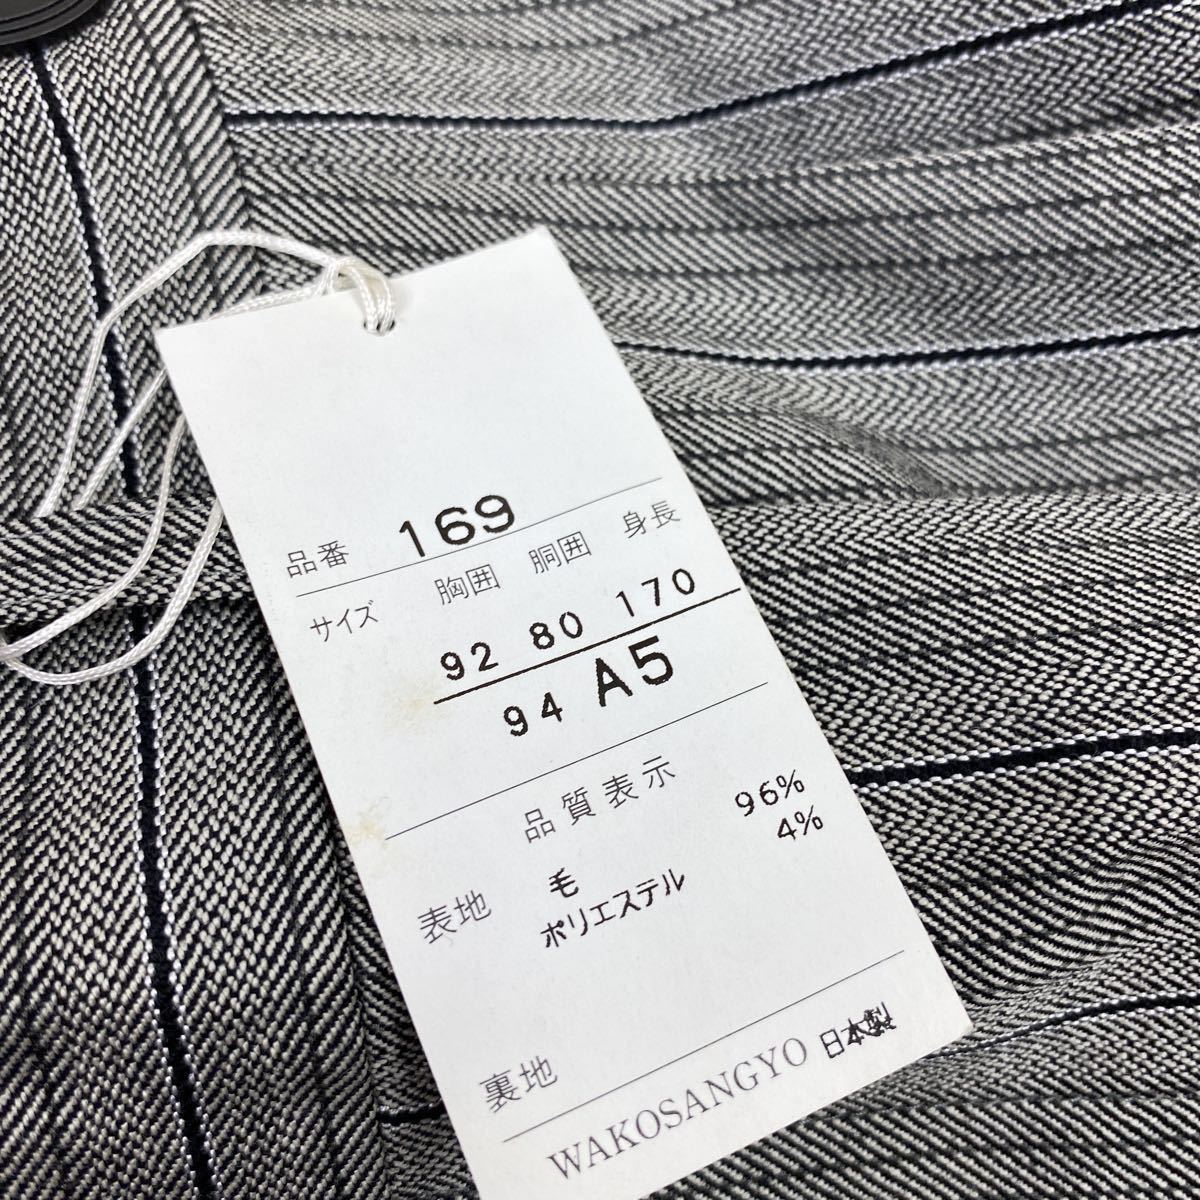  новый товар * есть перевод с биркой супер-скидка высококлассный BUCKINGHAM extrablackmo- человек g пальто 3 деталь шерсть 100% выставить размер A5 высококлассный формальный сделано в Японии высший класс 